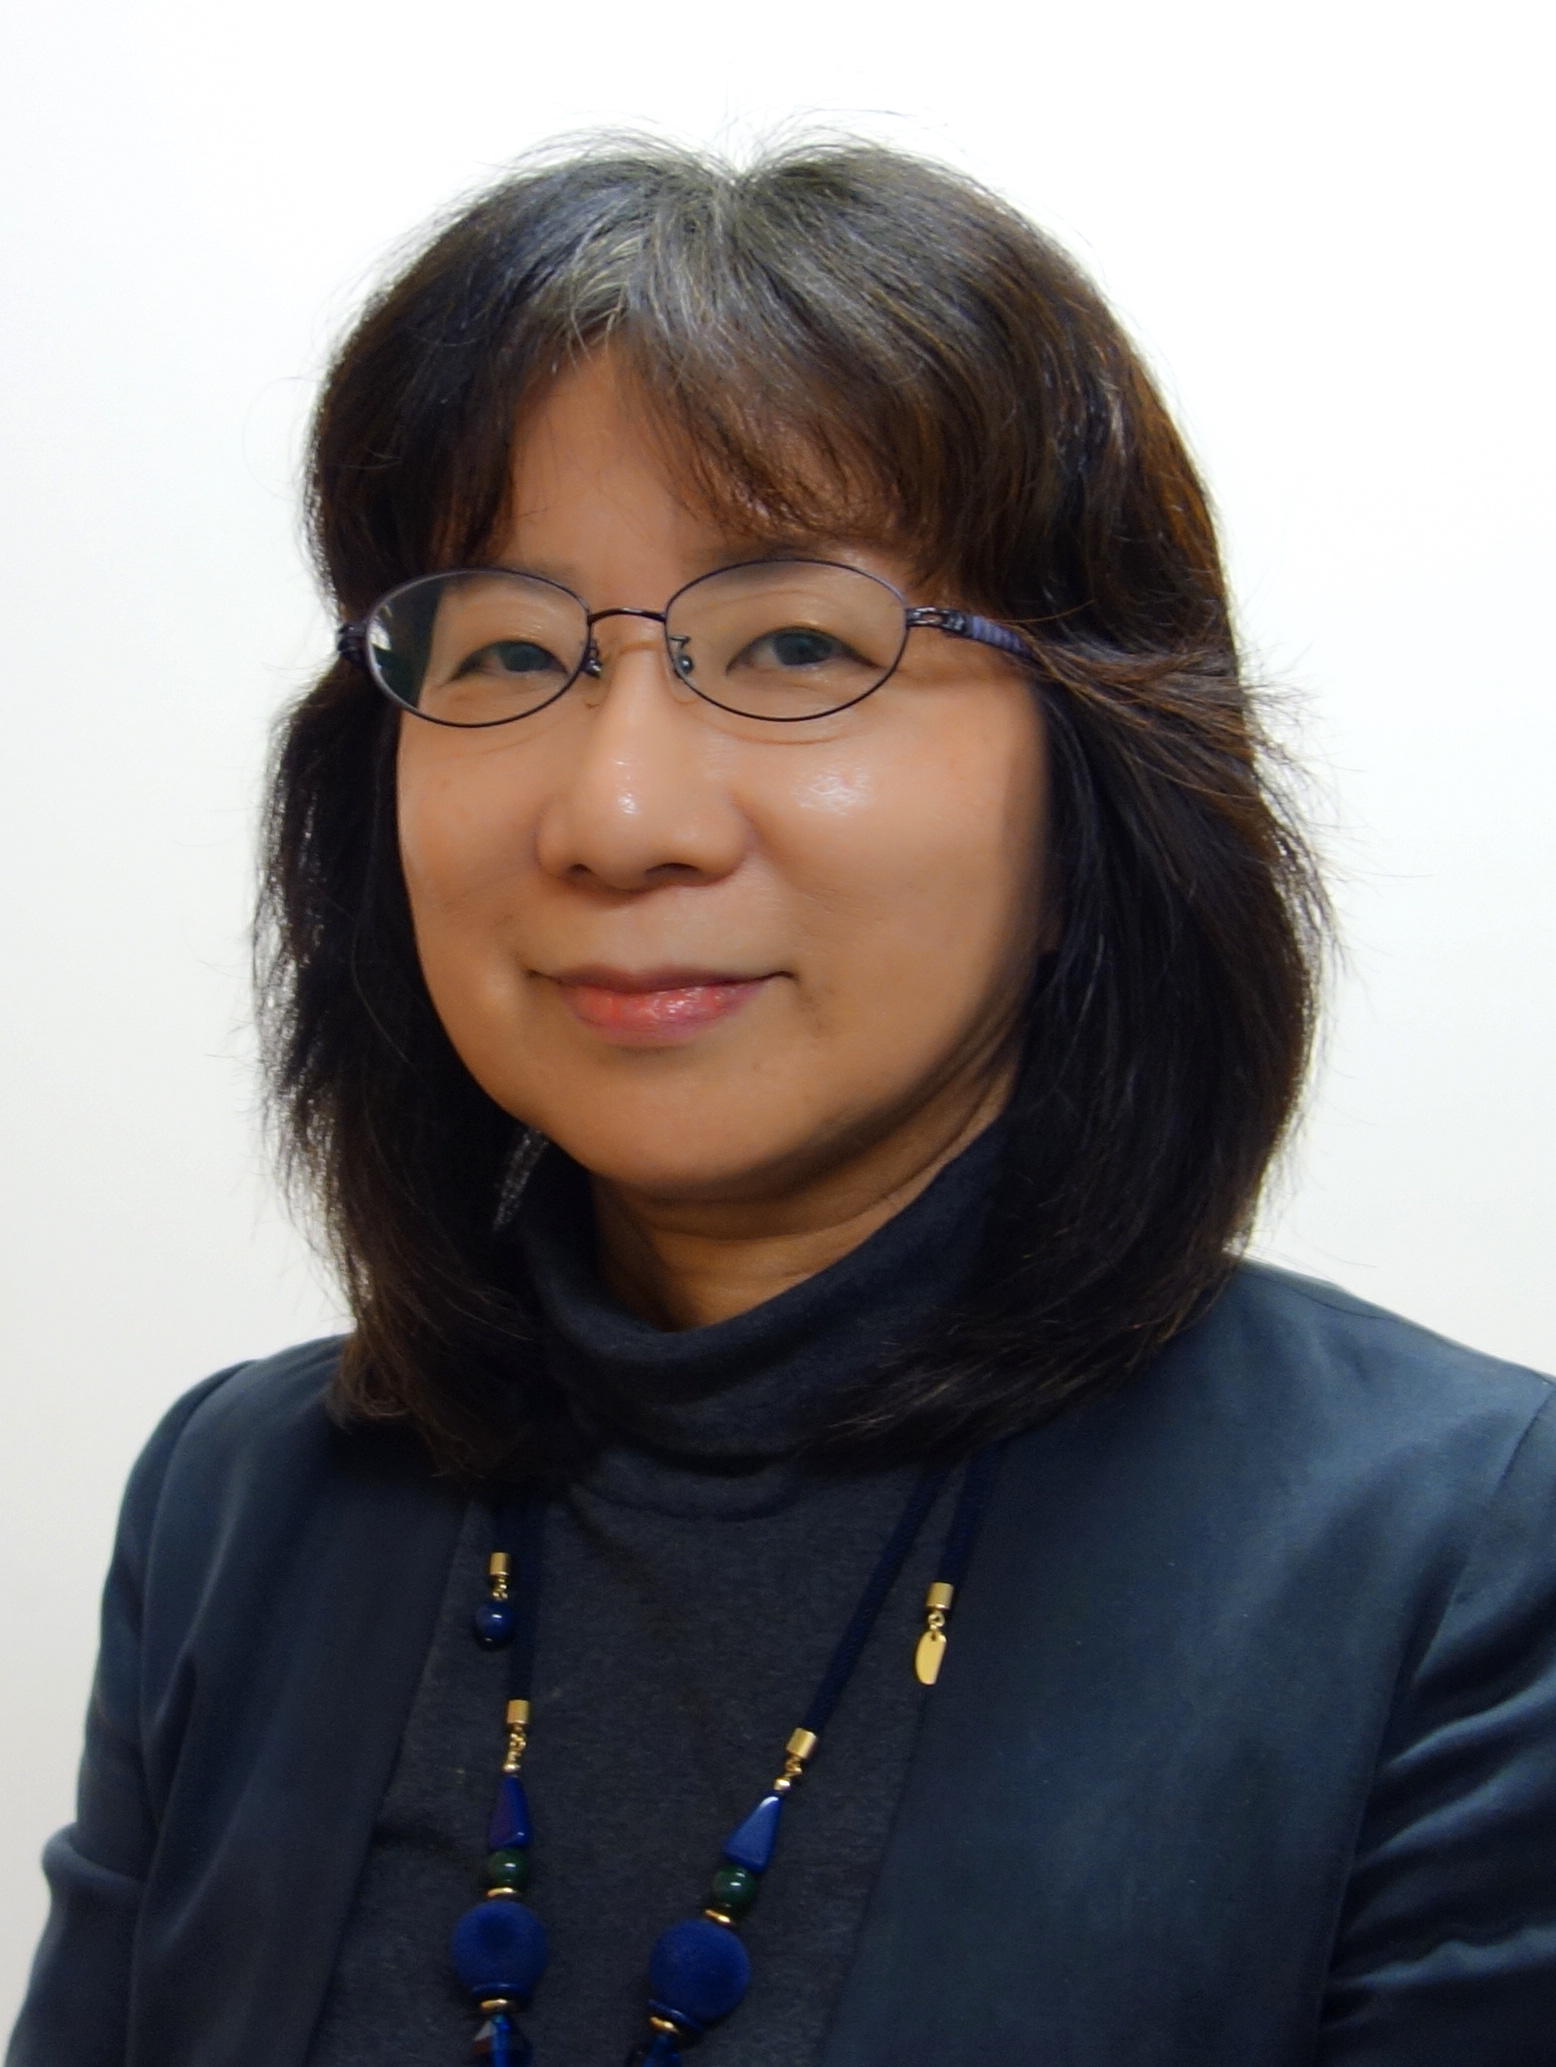 Masako Murota